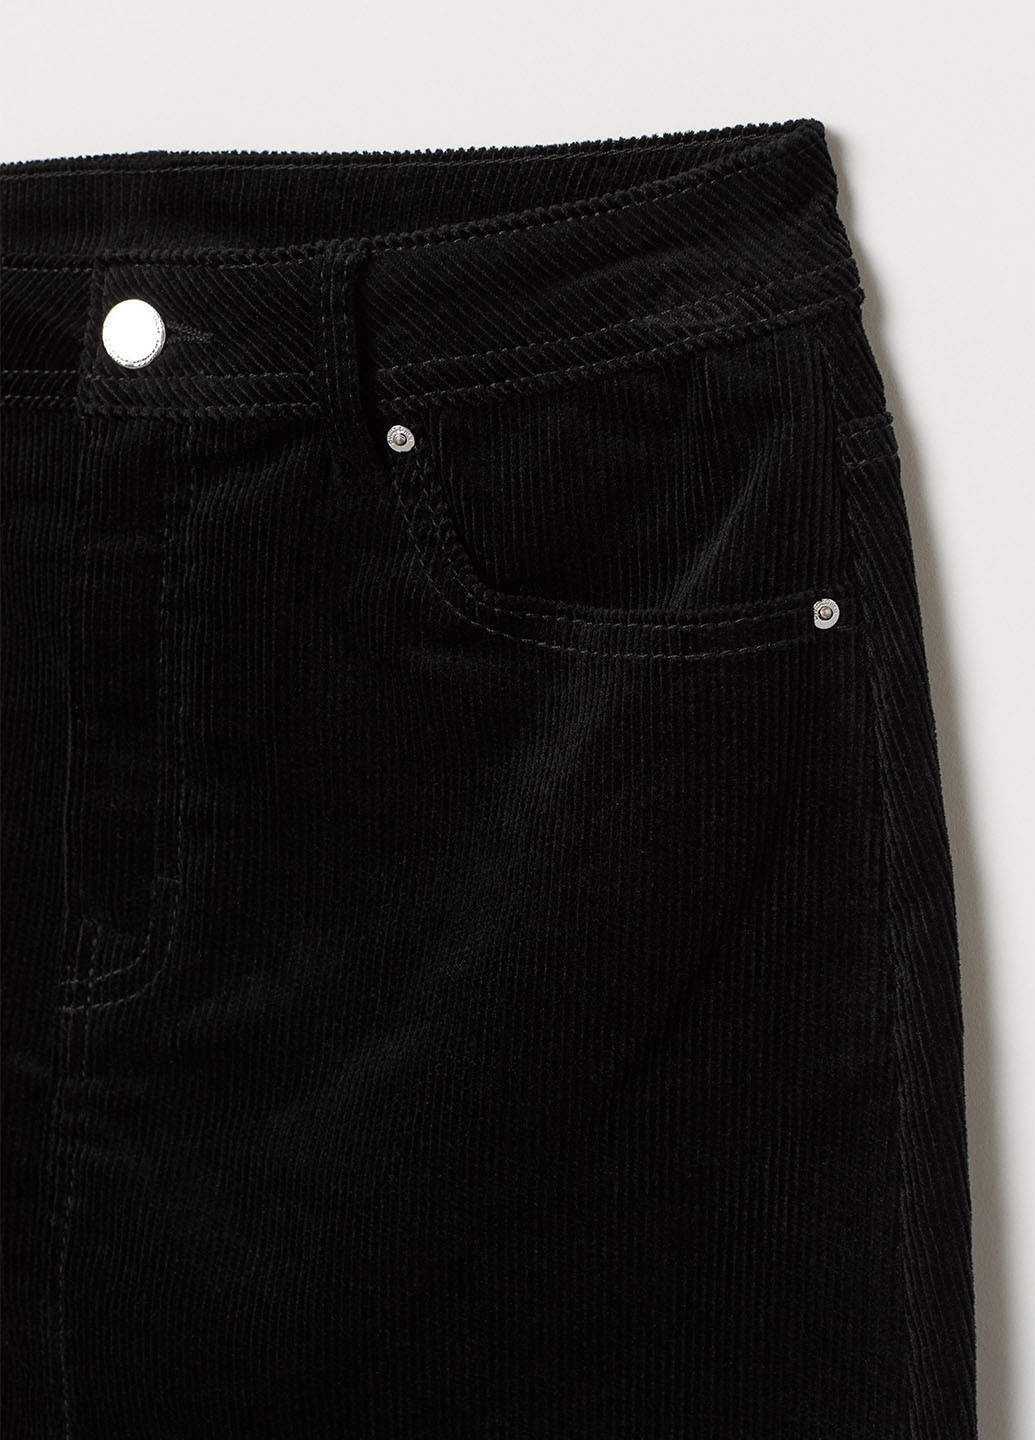 Черная джинсовая юбка H&M а-силуэта (трапеция)